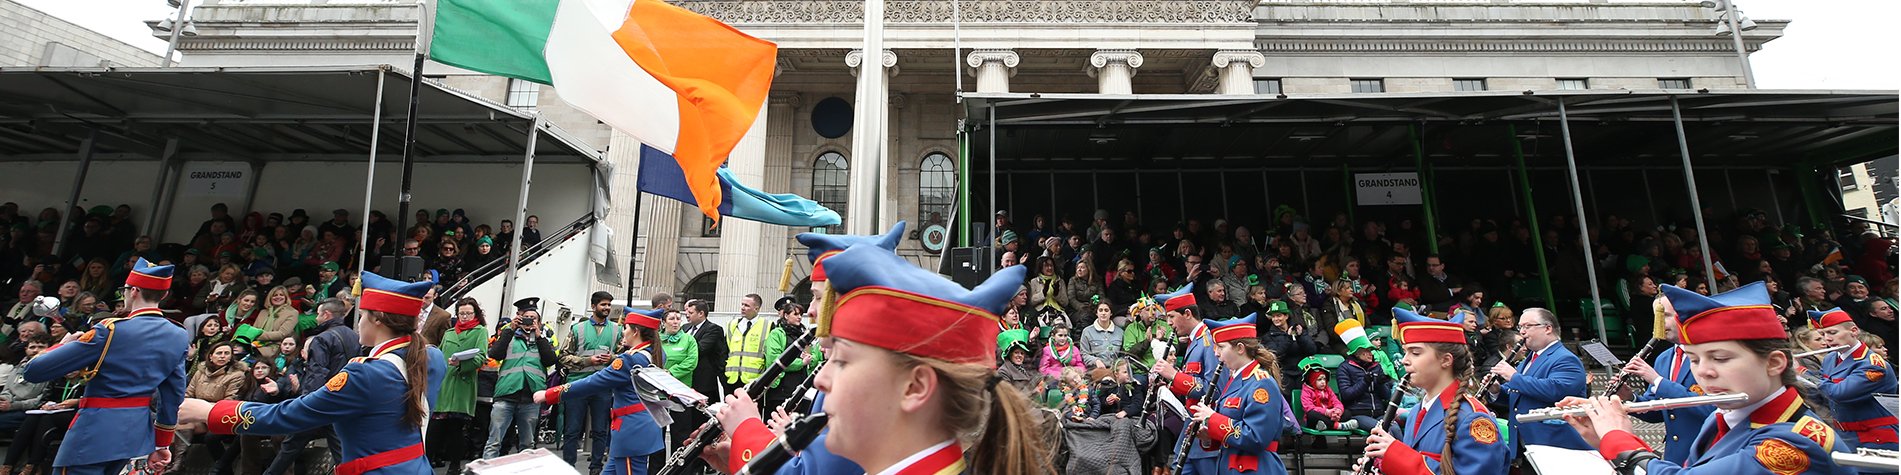 St Patricks Day Ireland Flag and Parade